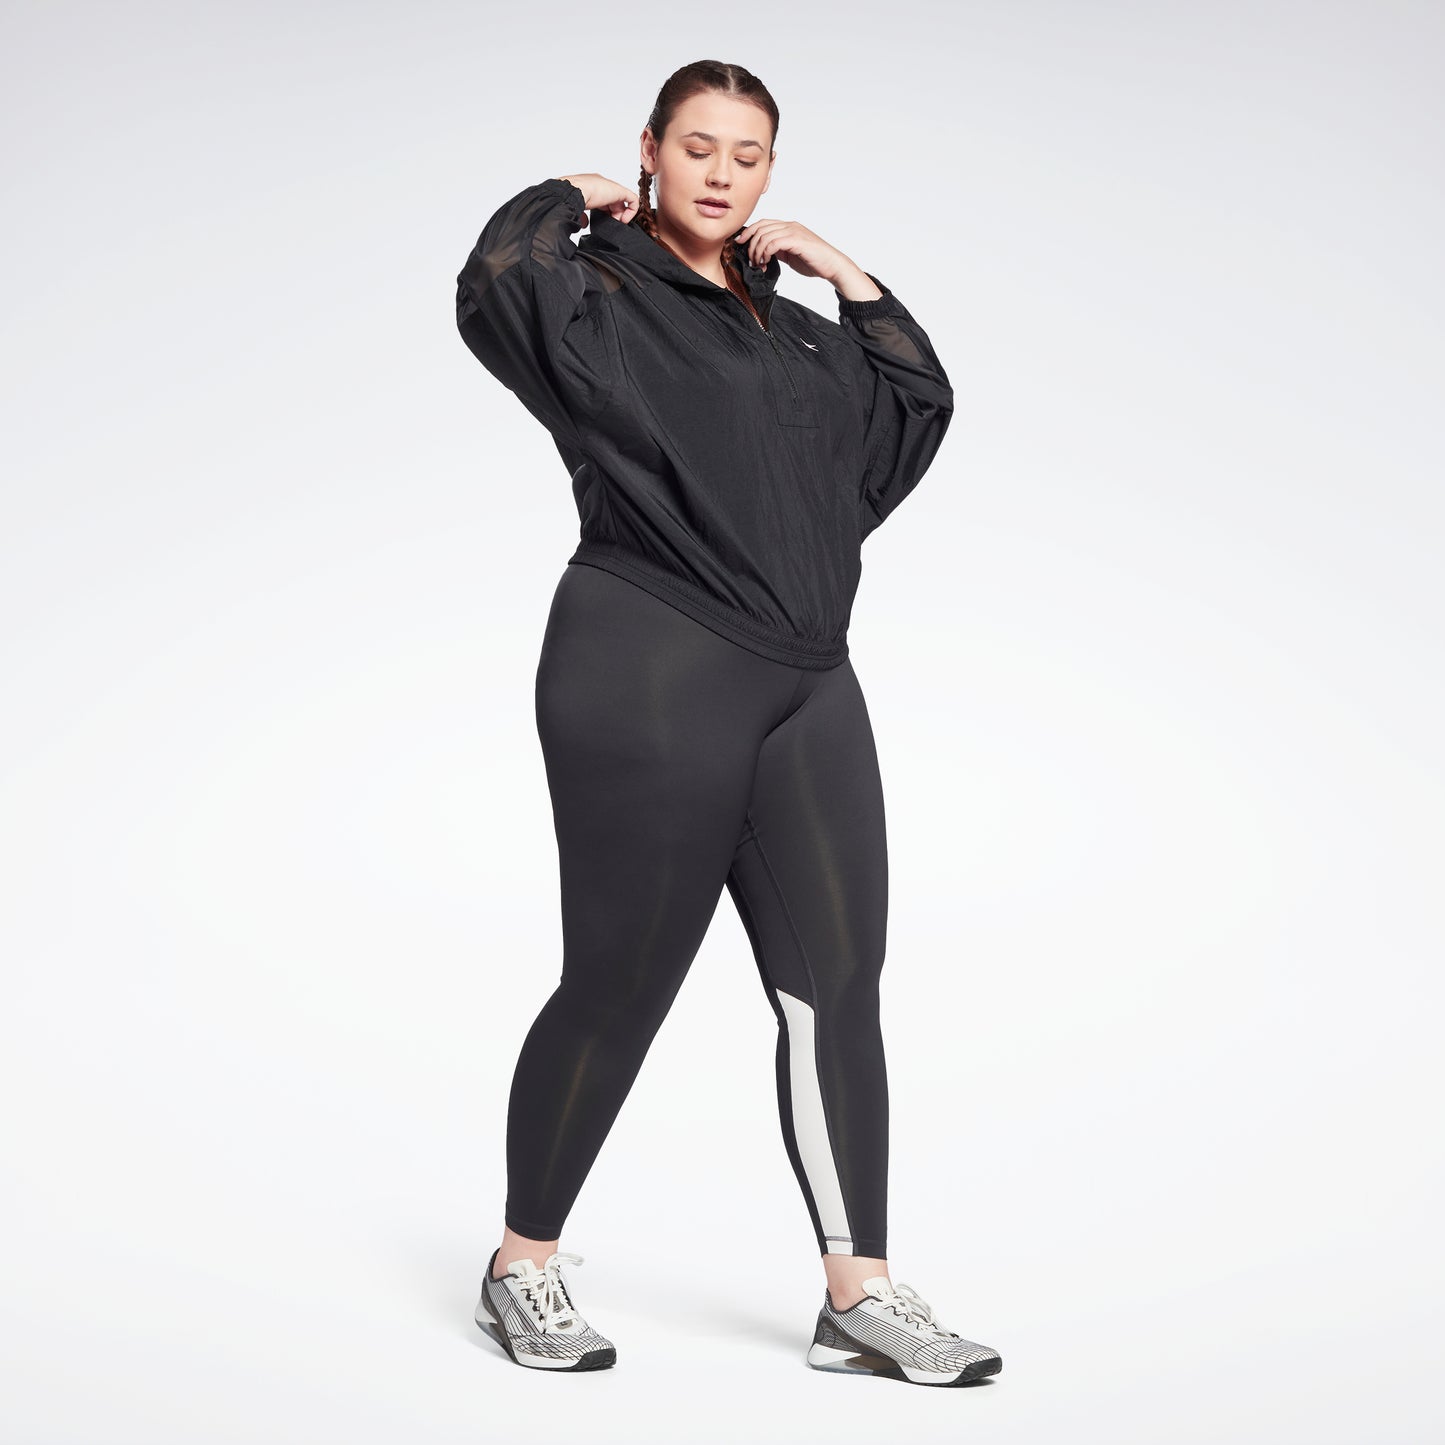 Reebok Workout Ready Big Logo Women's Plus Size Leggings - Free